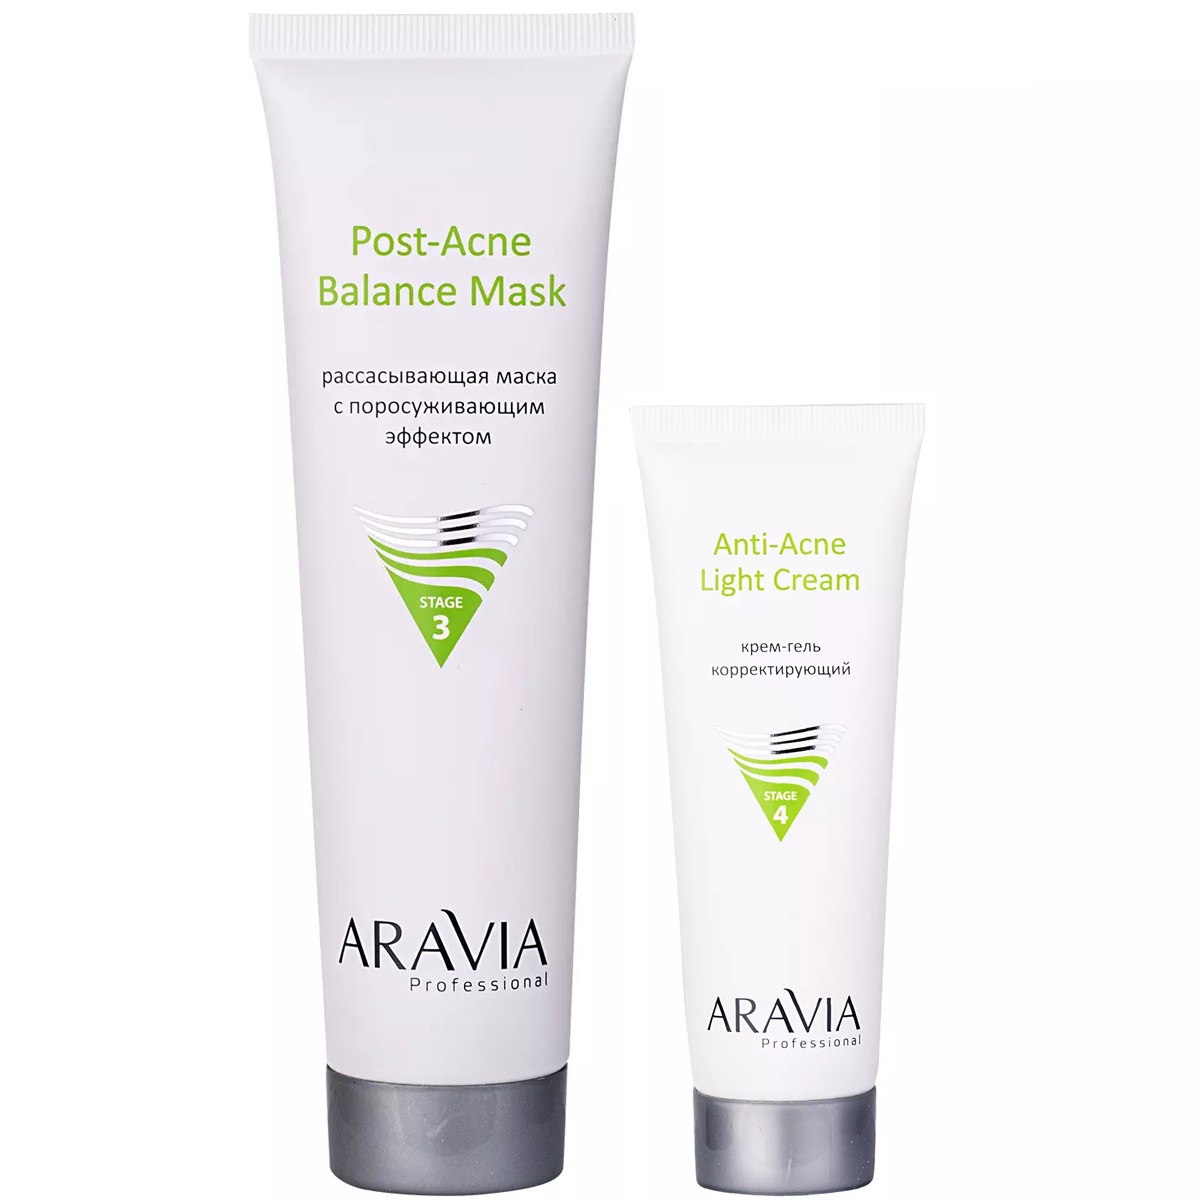 Aravia Professional Набор для проблемной и жирной кожи: маска, 100 мл + крем-гель, 50 мл (Aravia Professional, Уход за лицом) stop acne mask маска поросуживающая для жирной и комбинированной кожи